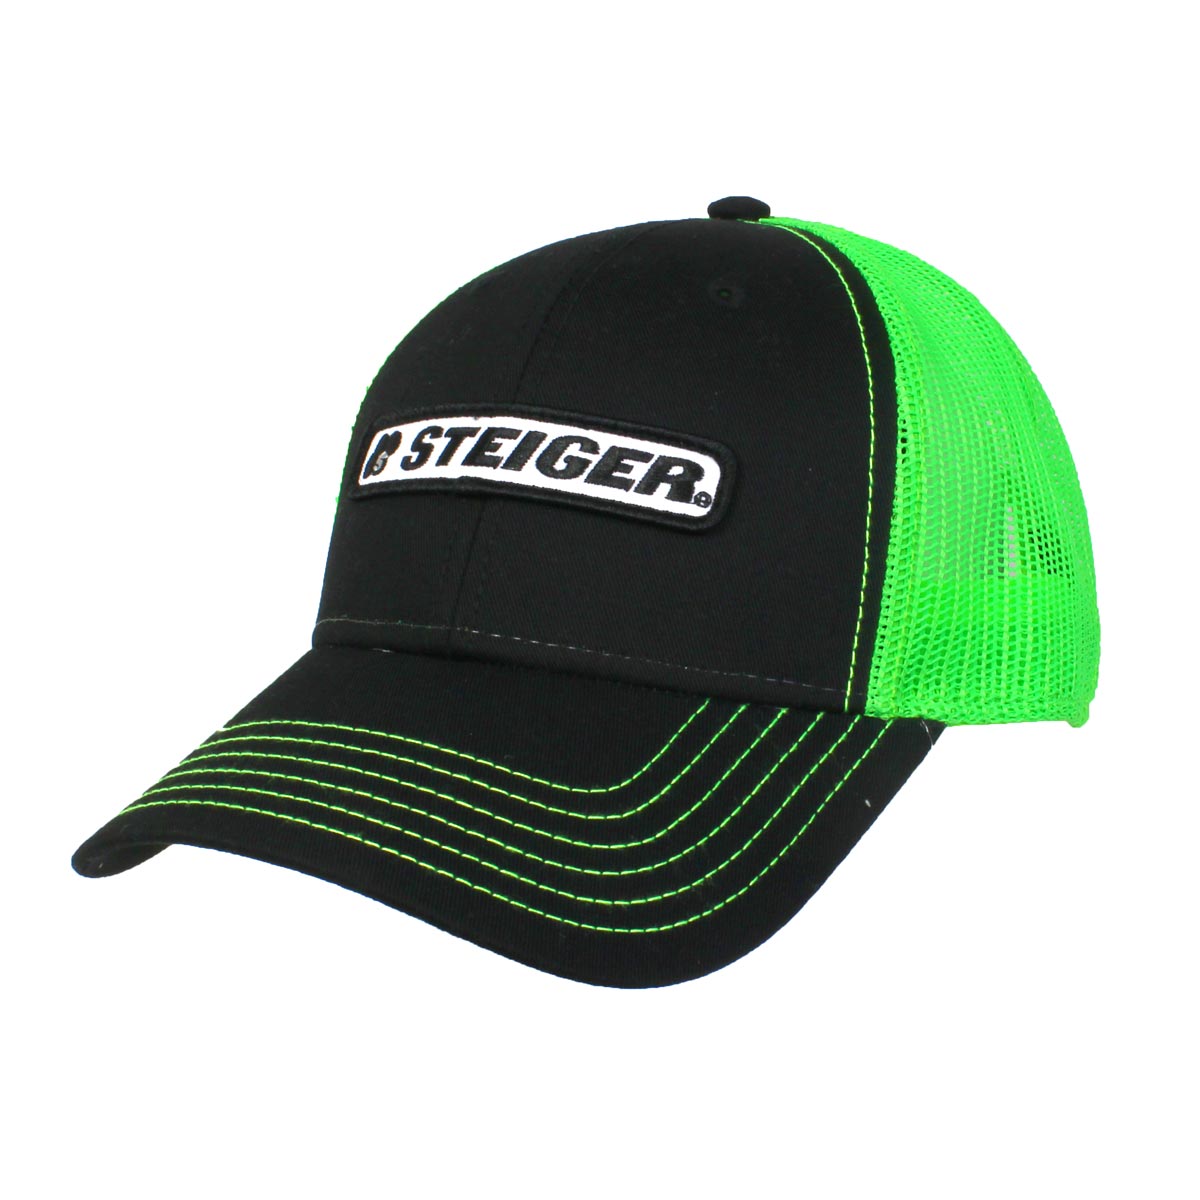 7800円 全日本送料無料 Steiger Tractor Logo Hat Black Mesh